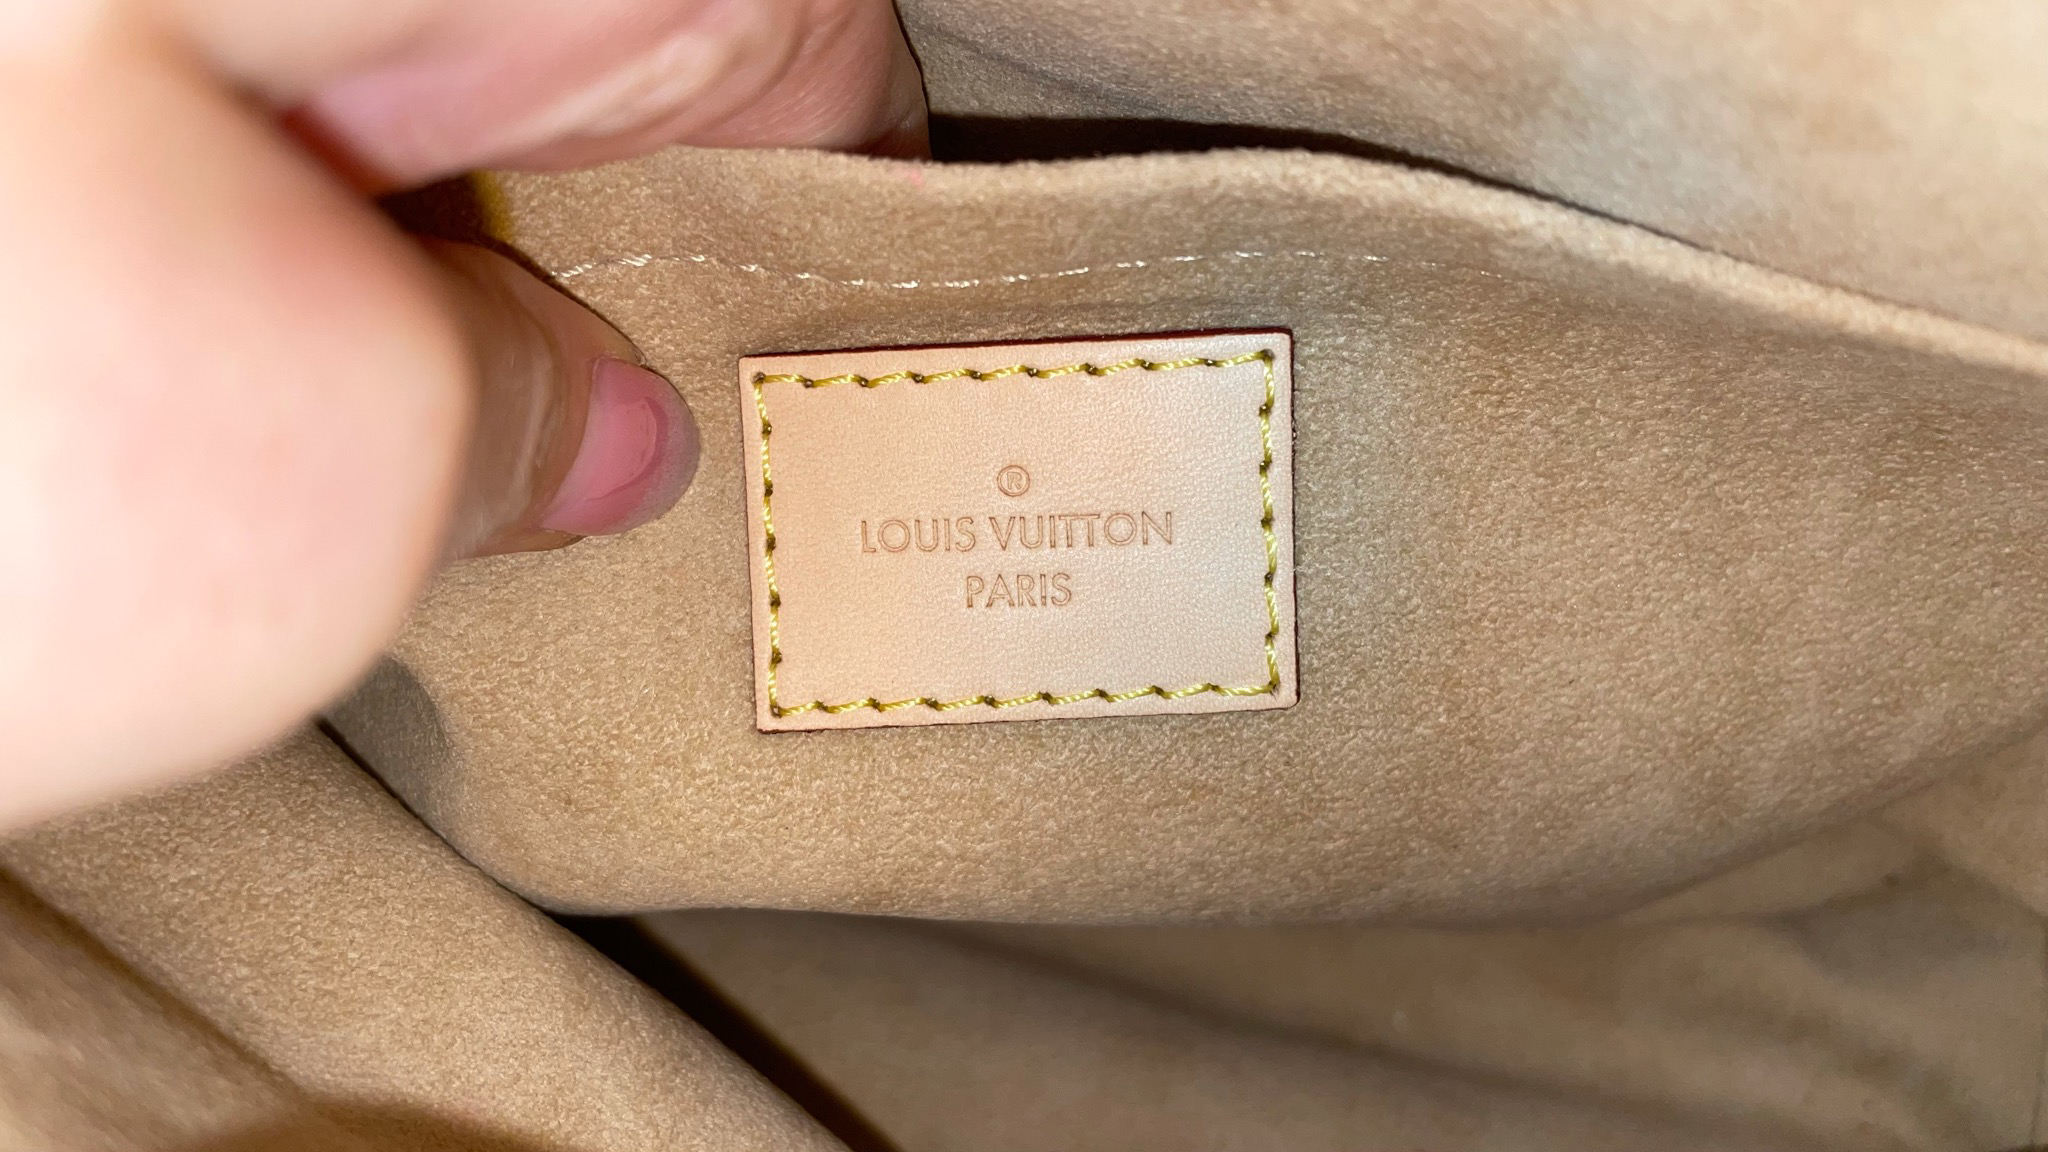 LOUIS VUITTON Pallas bag in brown monogram canvas - VALOIS VINTAGE PARIS